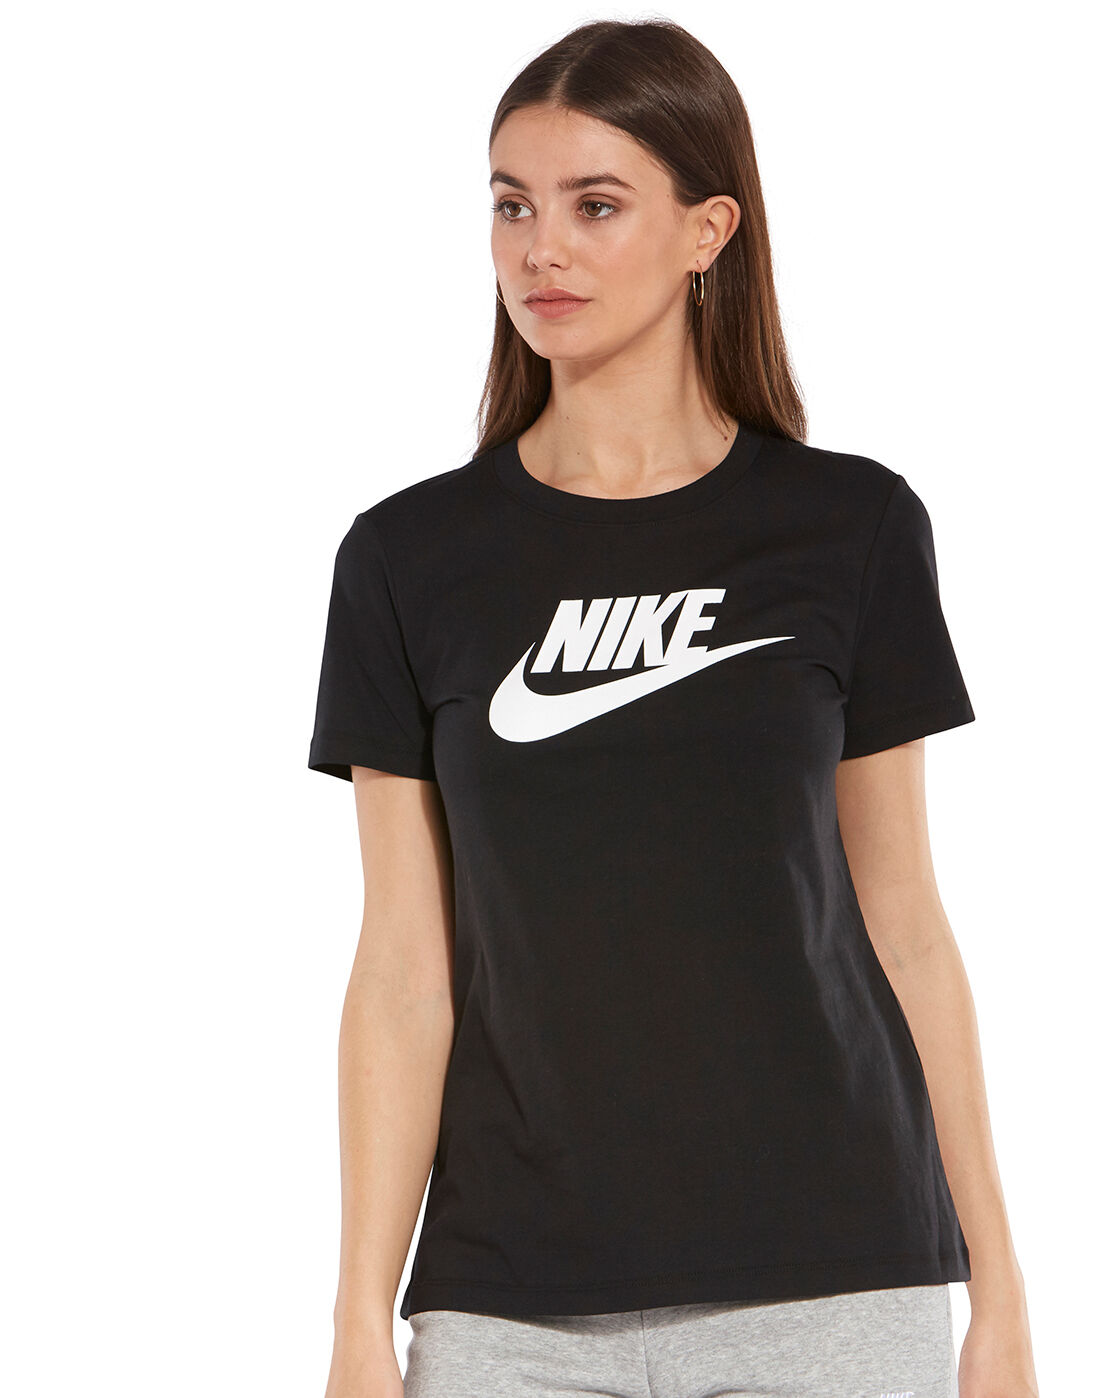 Women's Black Nike T-Shirt | Life Style 